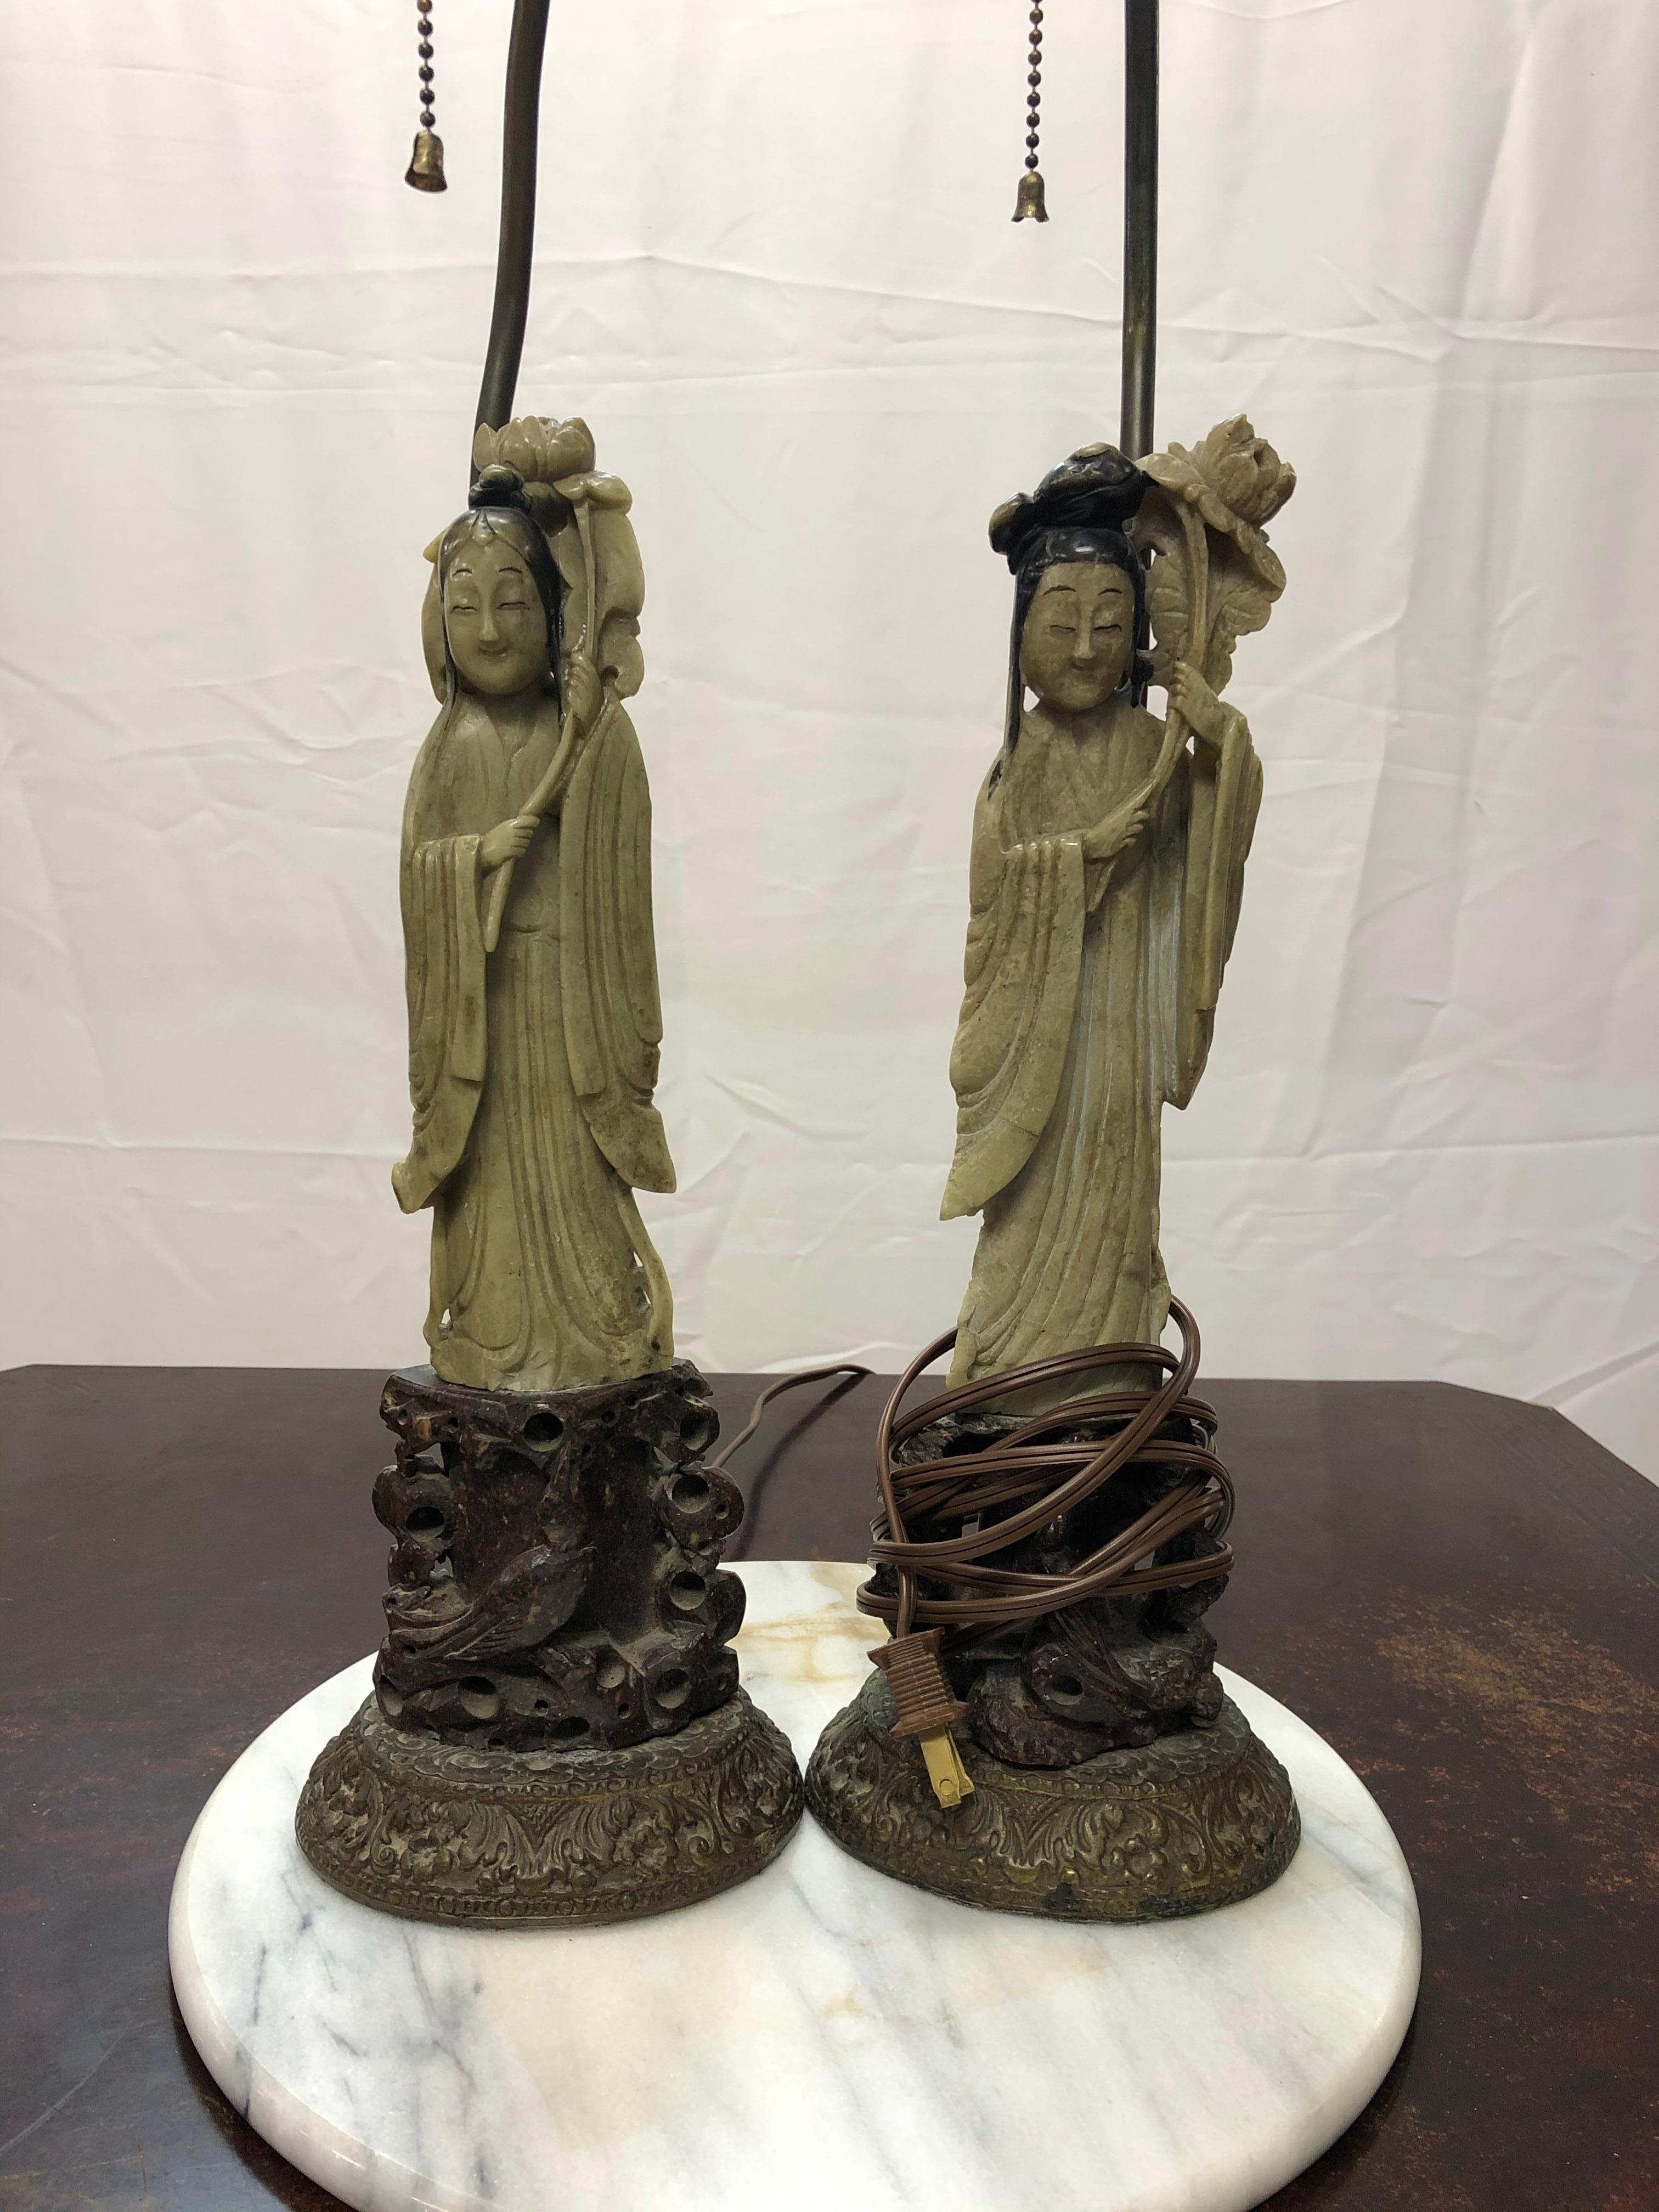 Fabuleuse paire de lampes figuratives chinoises en pierre dure du début du 20e siècle. Les fleurons sont en jade et sont accompagnés des abat-jour en soie d'origine. Ils mesurent 12 1/2 pouces de haut avec la base et 11 1/2 sans la base. Chaque